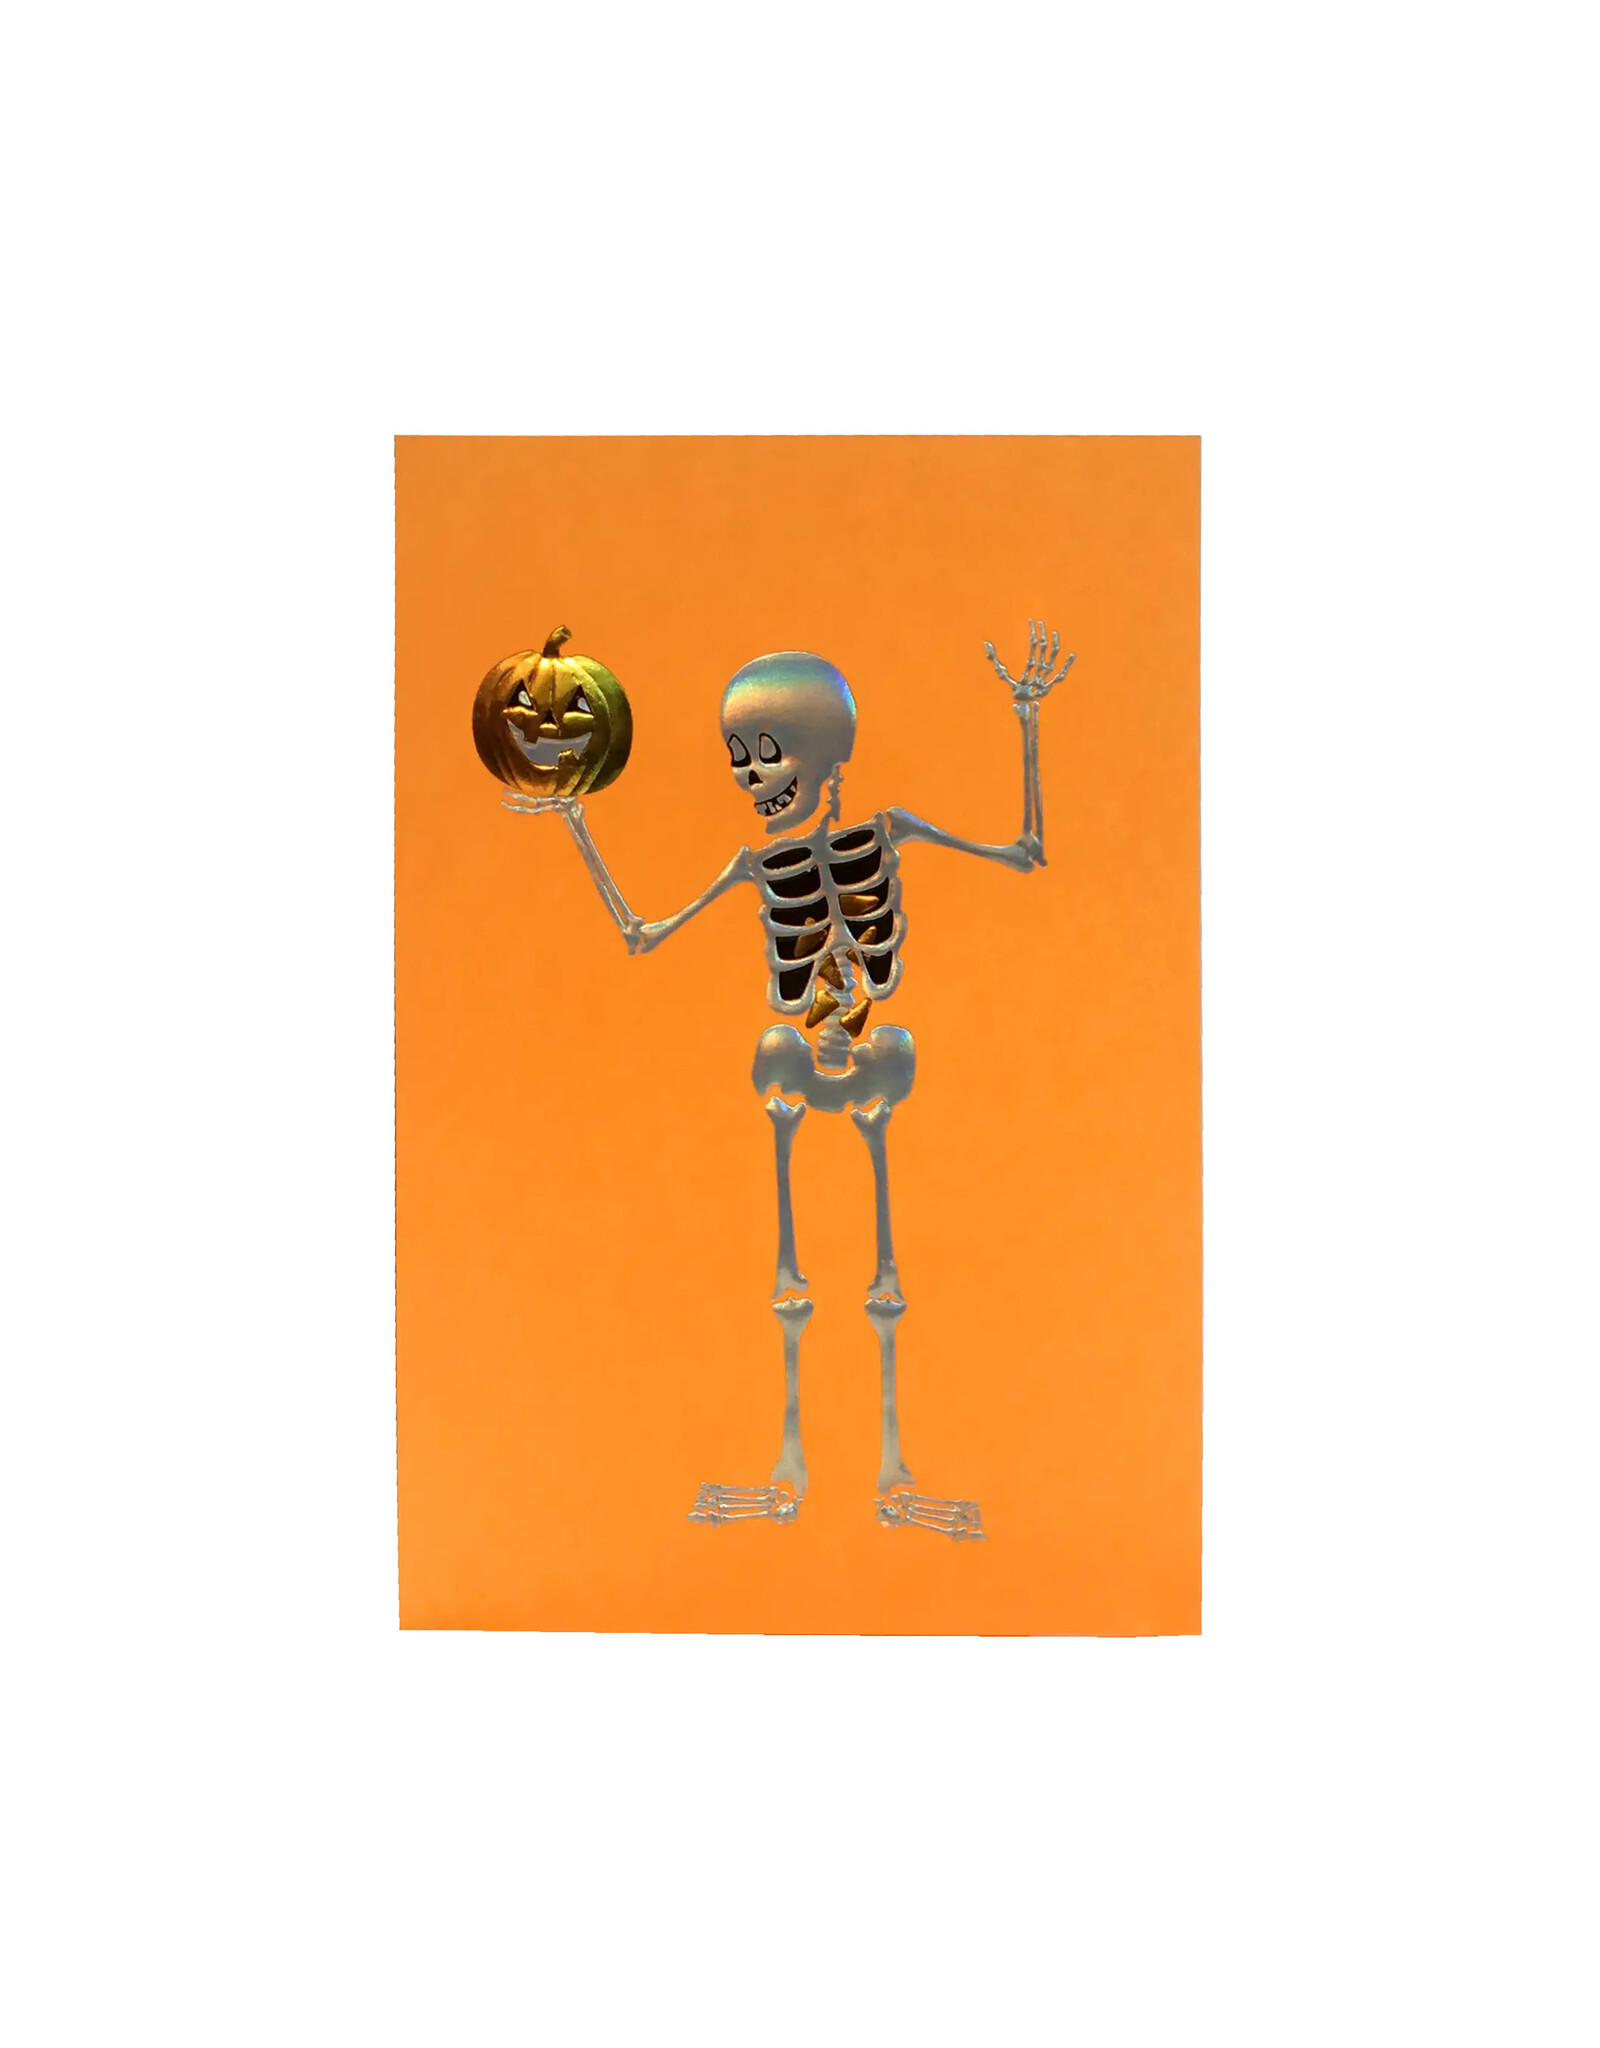 Paula Skene Designs Skeleton Holding Pumpkin on Orange Halloween Notecard